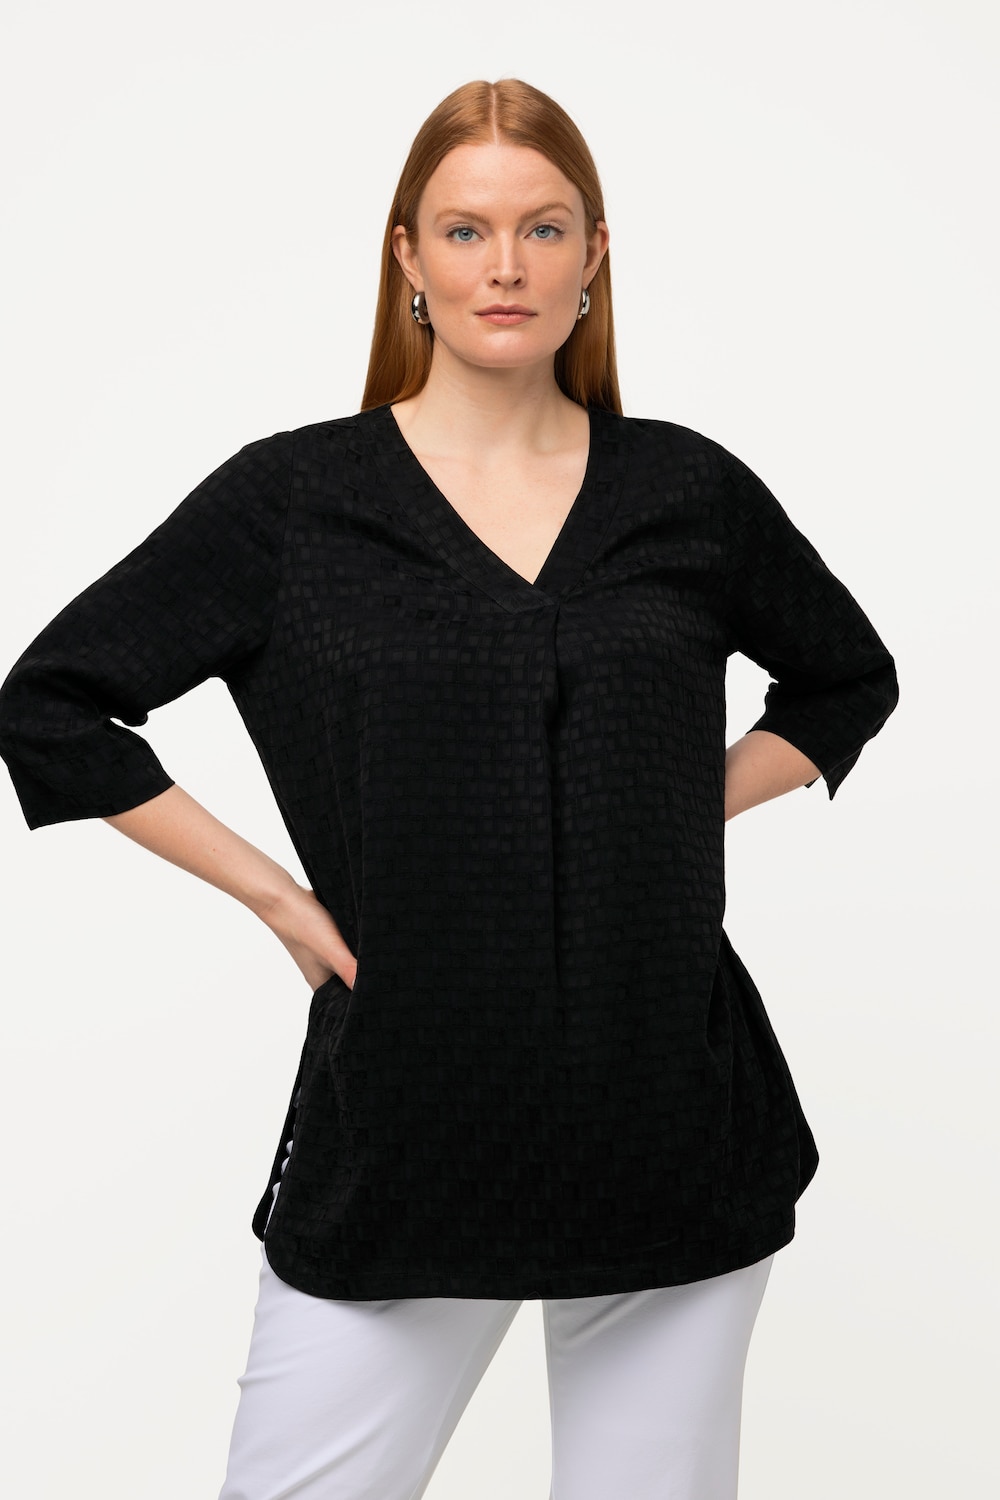 Grote Maten cupro blouse, Dames, zwart, Maat: 54/56, Synthetische vezels/Viscose, Ulla Popken